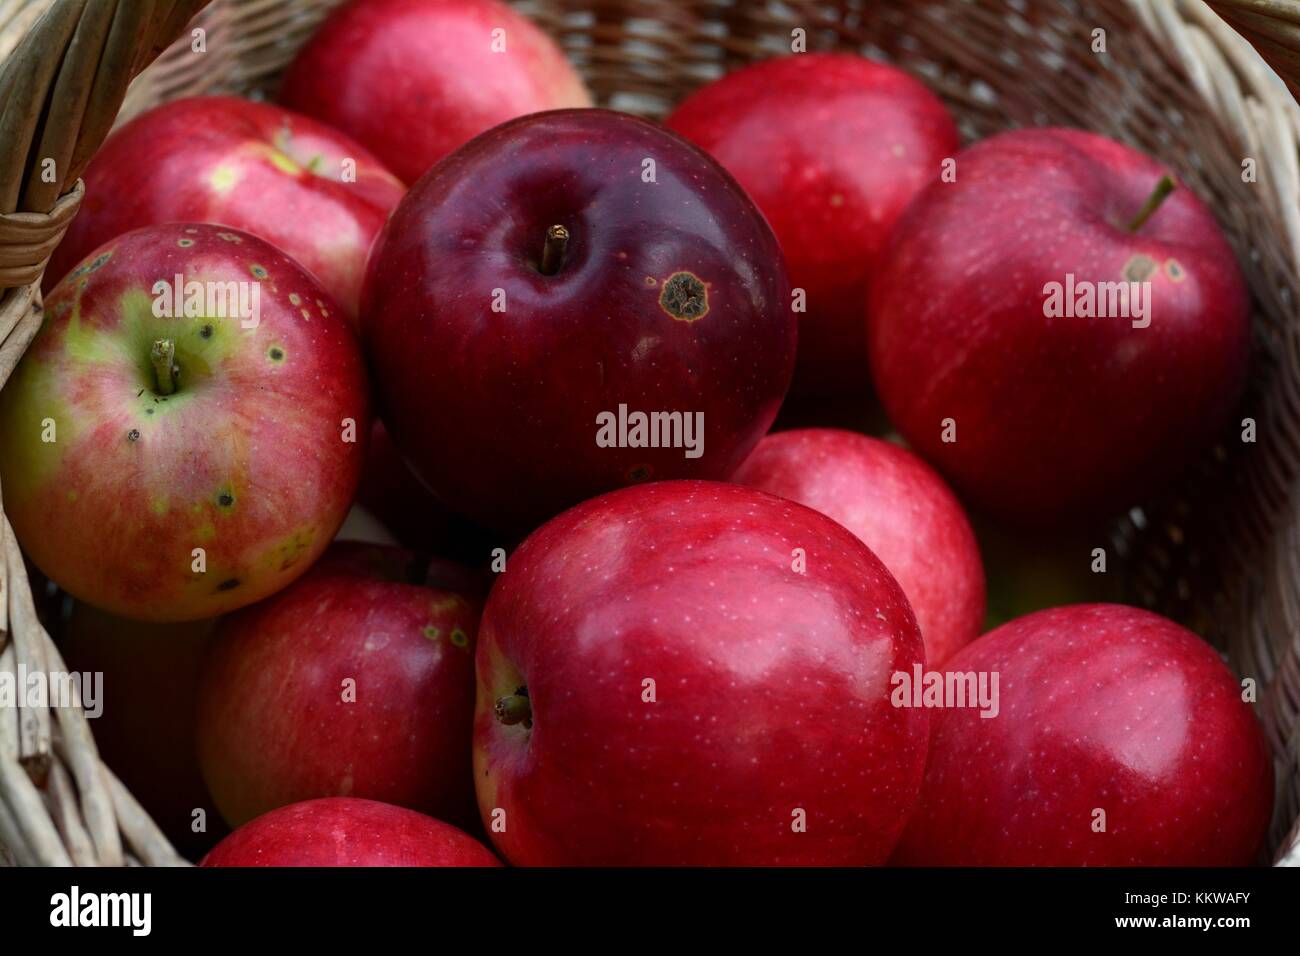 https://c8.alamy.com/comp/KKWAFY/freshly-picked-organic-apples-slava-pobeditelyam-KKWAFY.jpg